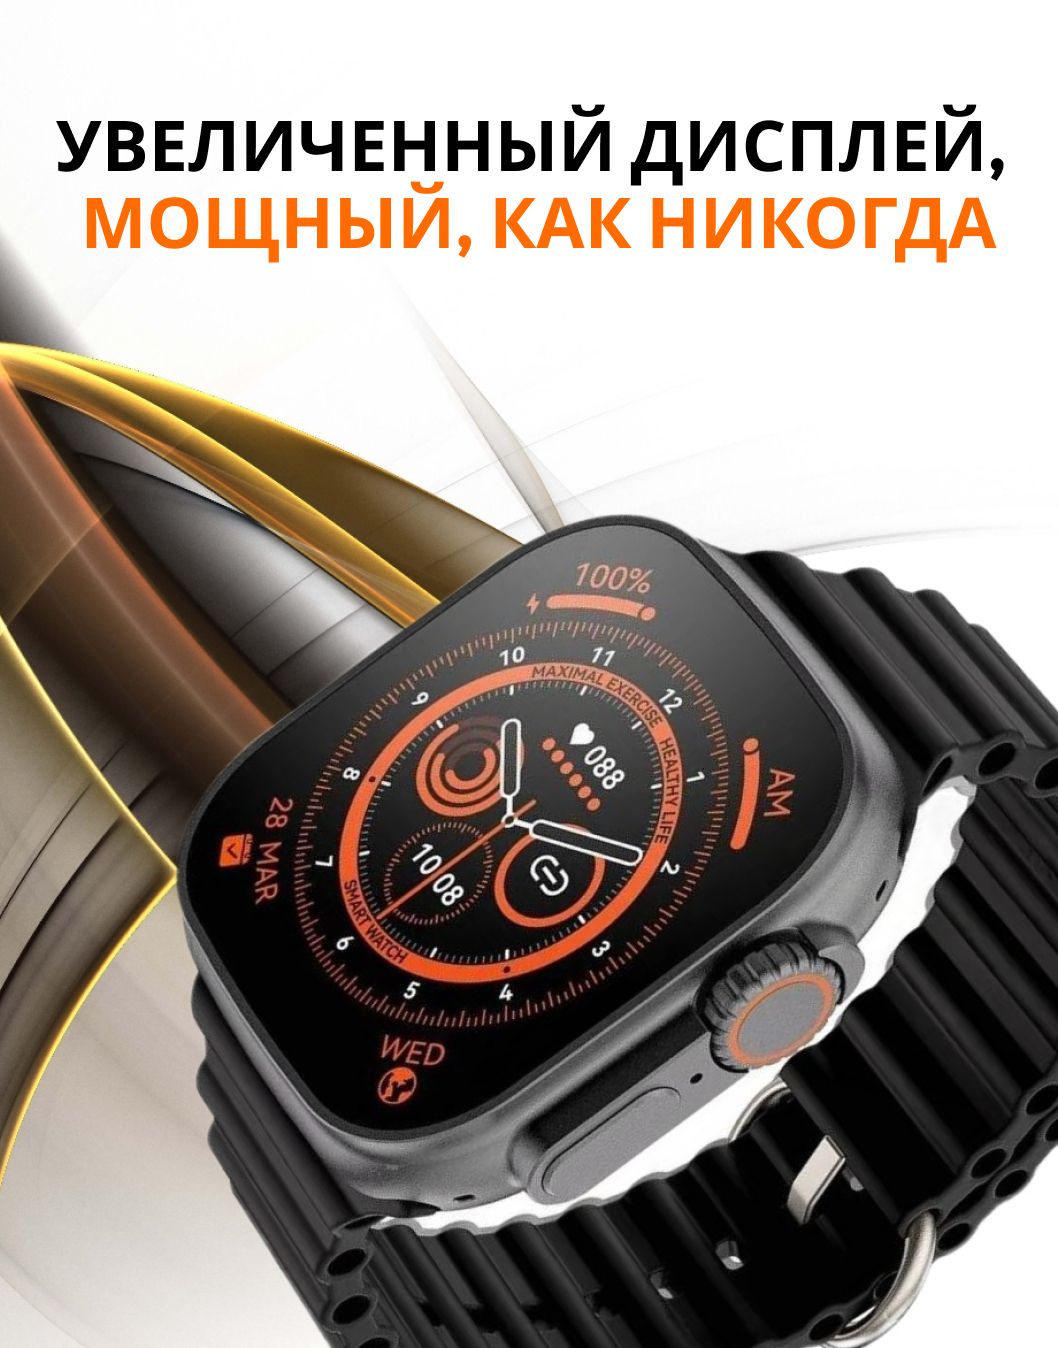 Смарт часы ультра GS Ultra 8. GS 8 Ultra часы. Часы wantach 8 ультра. Умные часы Техно Роял x8 ультра-. Часы z9 pro